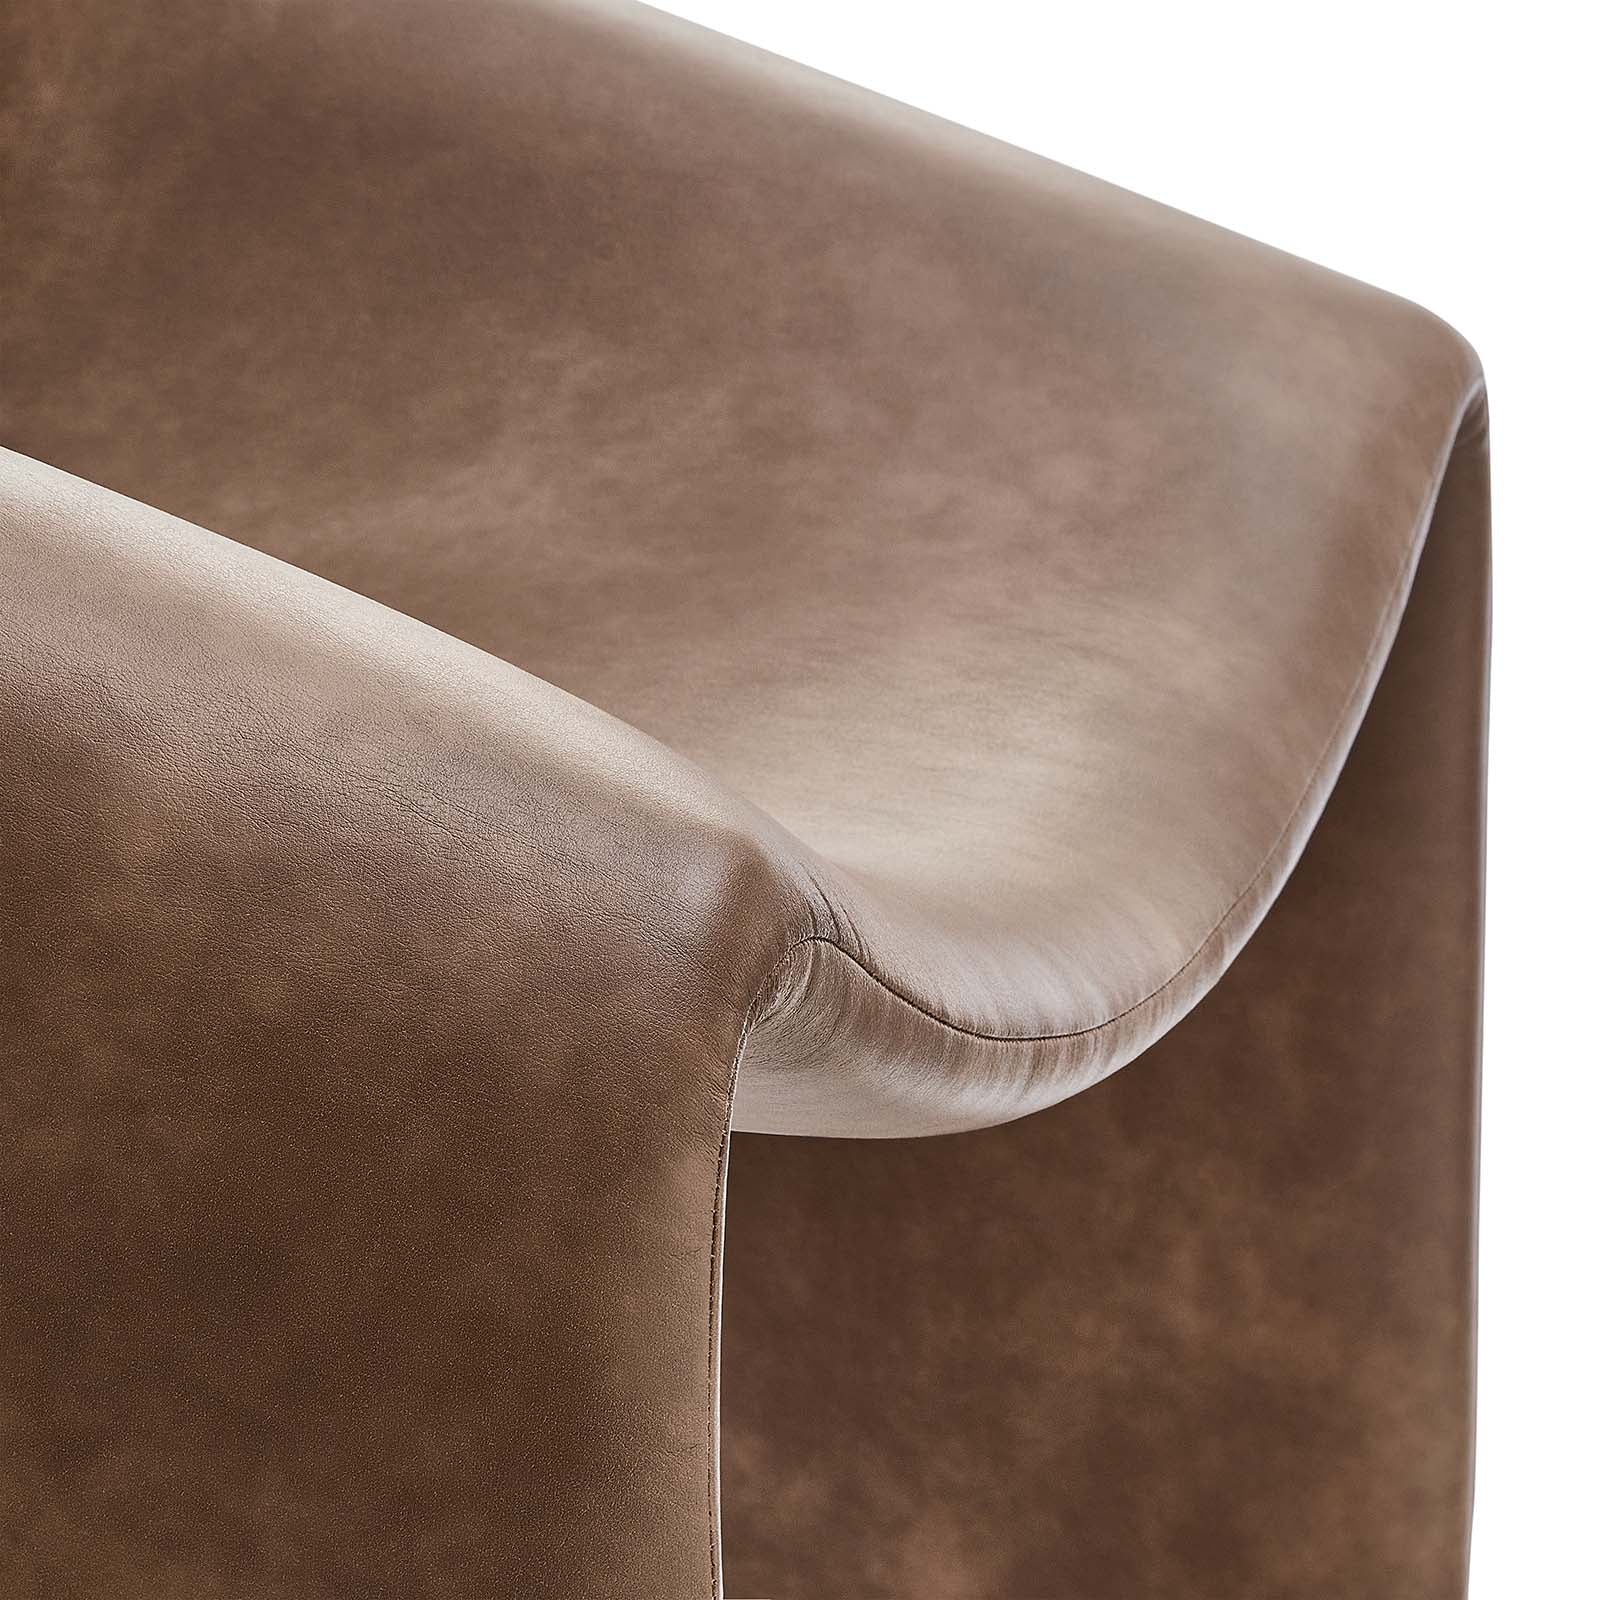 Vivi Vegan Leather Accent Chair